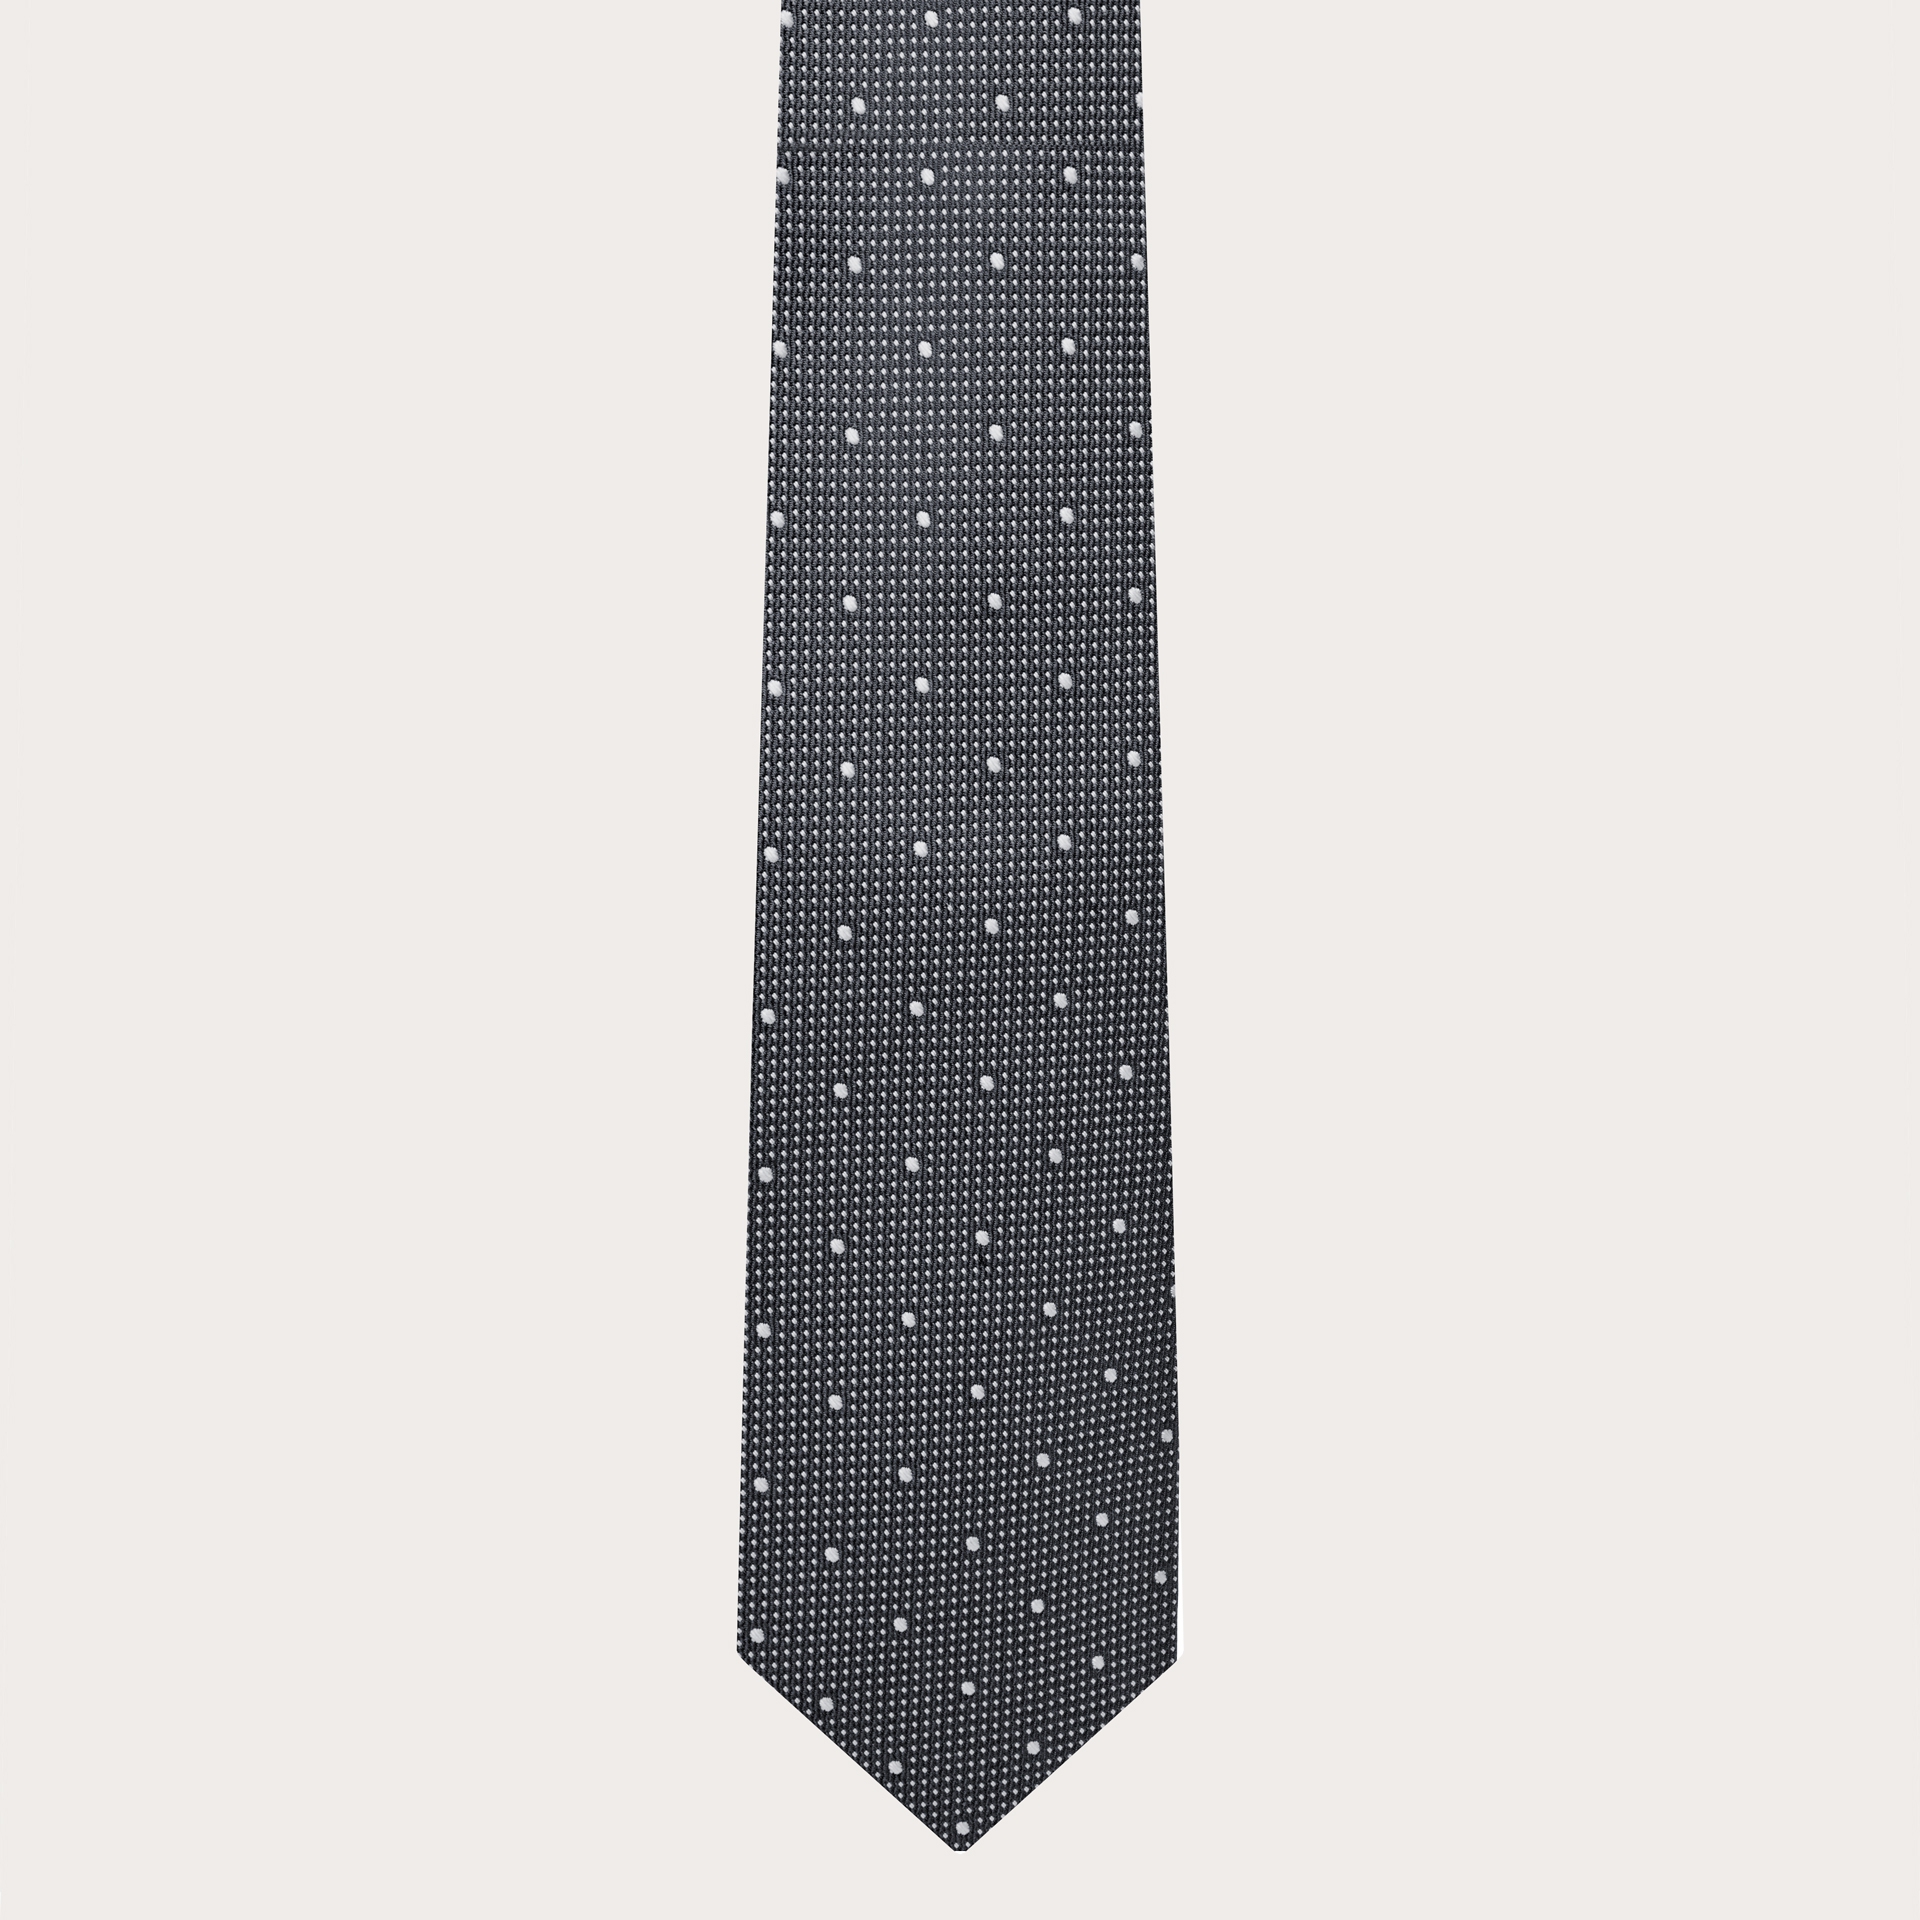 Cravatta uomo in seta jacquard grigio puntaspillo